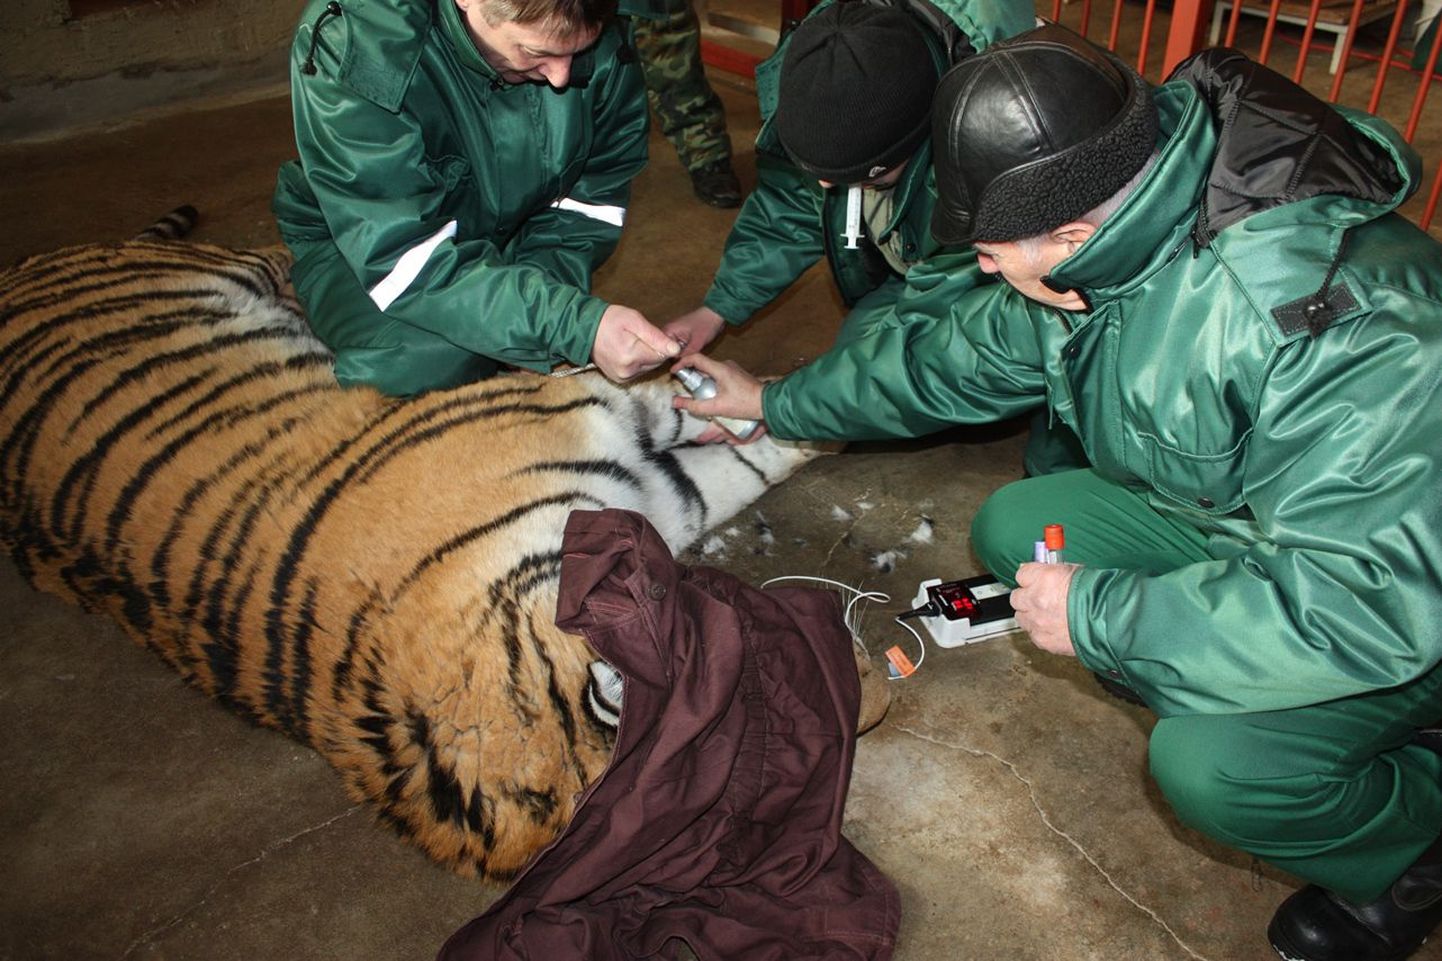 Loomaaia veterinaarid kasutasid juhust ja võtsid uinutatud tiigrilt analüüsideks verd, kontrollisid kiibi olemasolu ja ravisid tema ärahõõrdunud päkaaluseid.